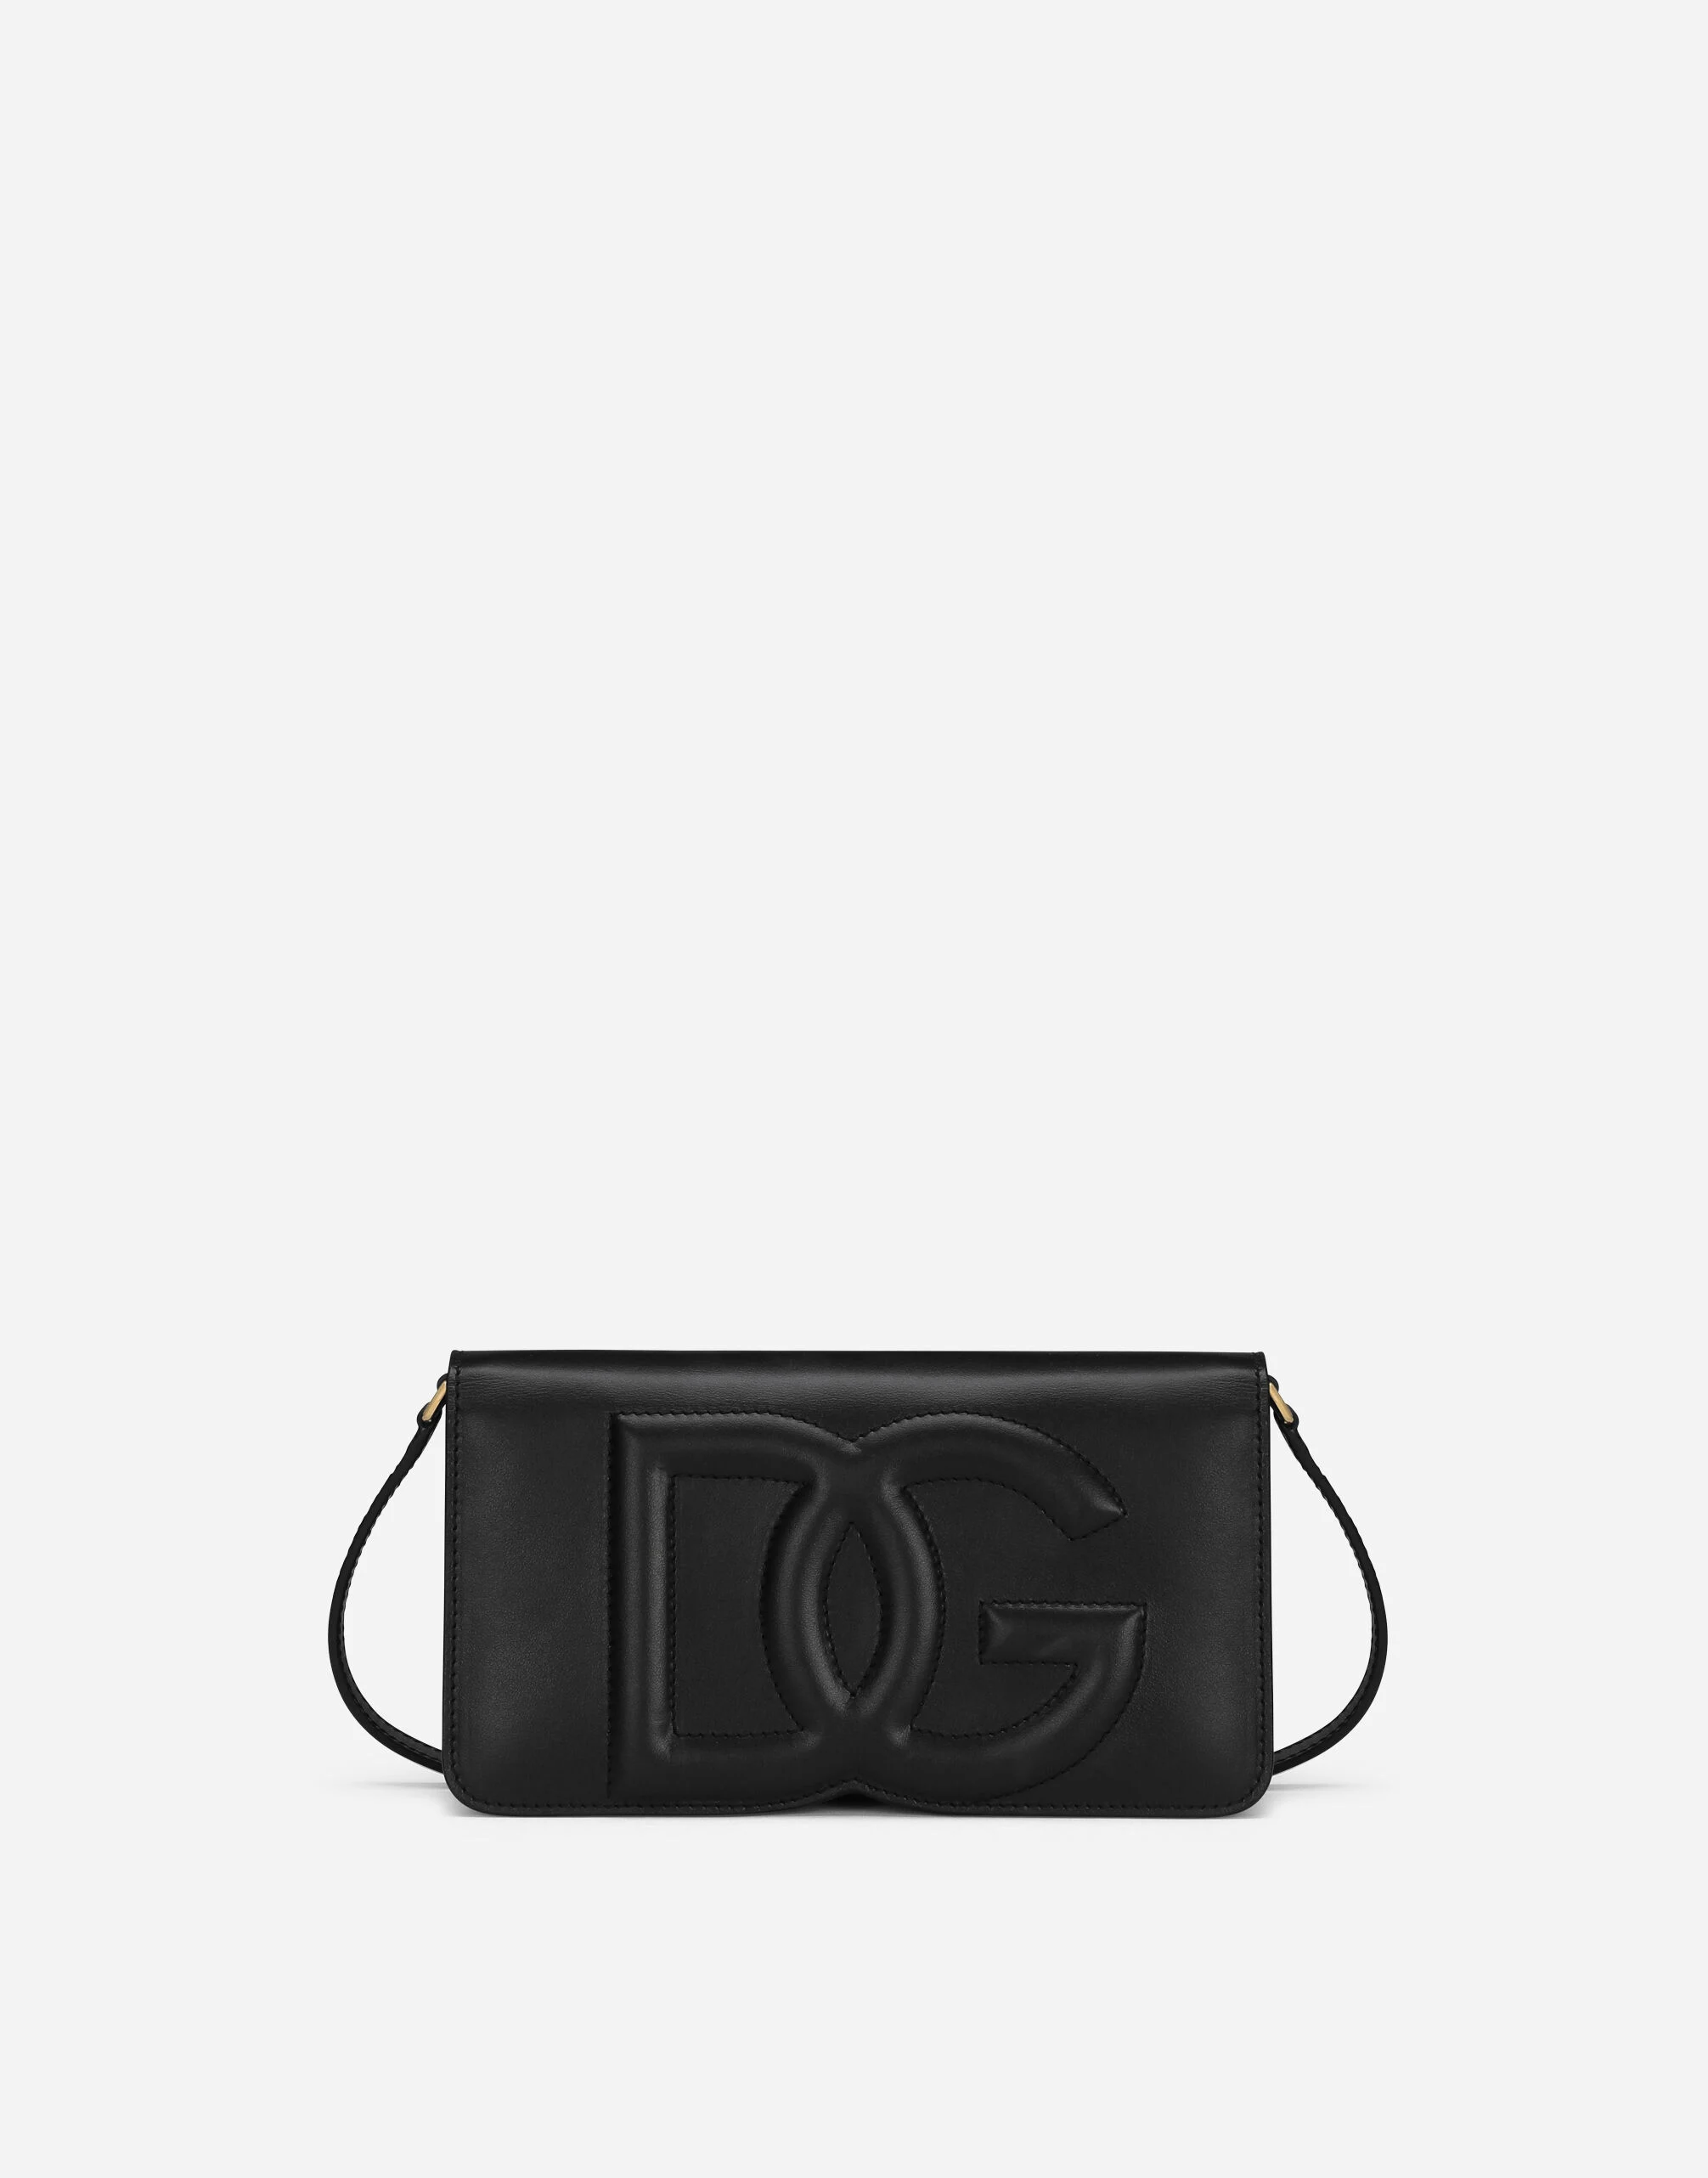 Dolce&Gabbana phone bag schwarz